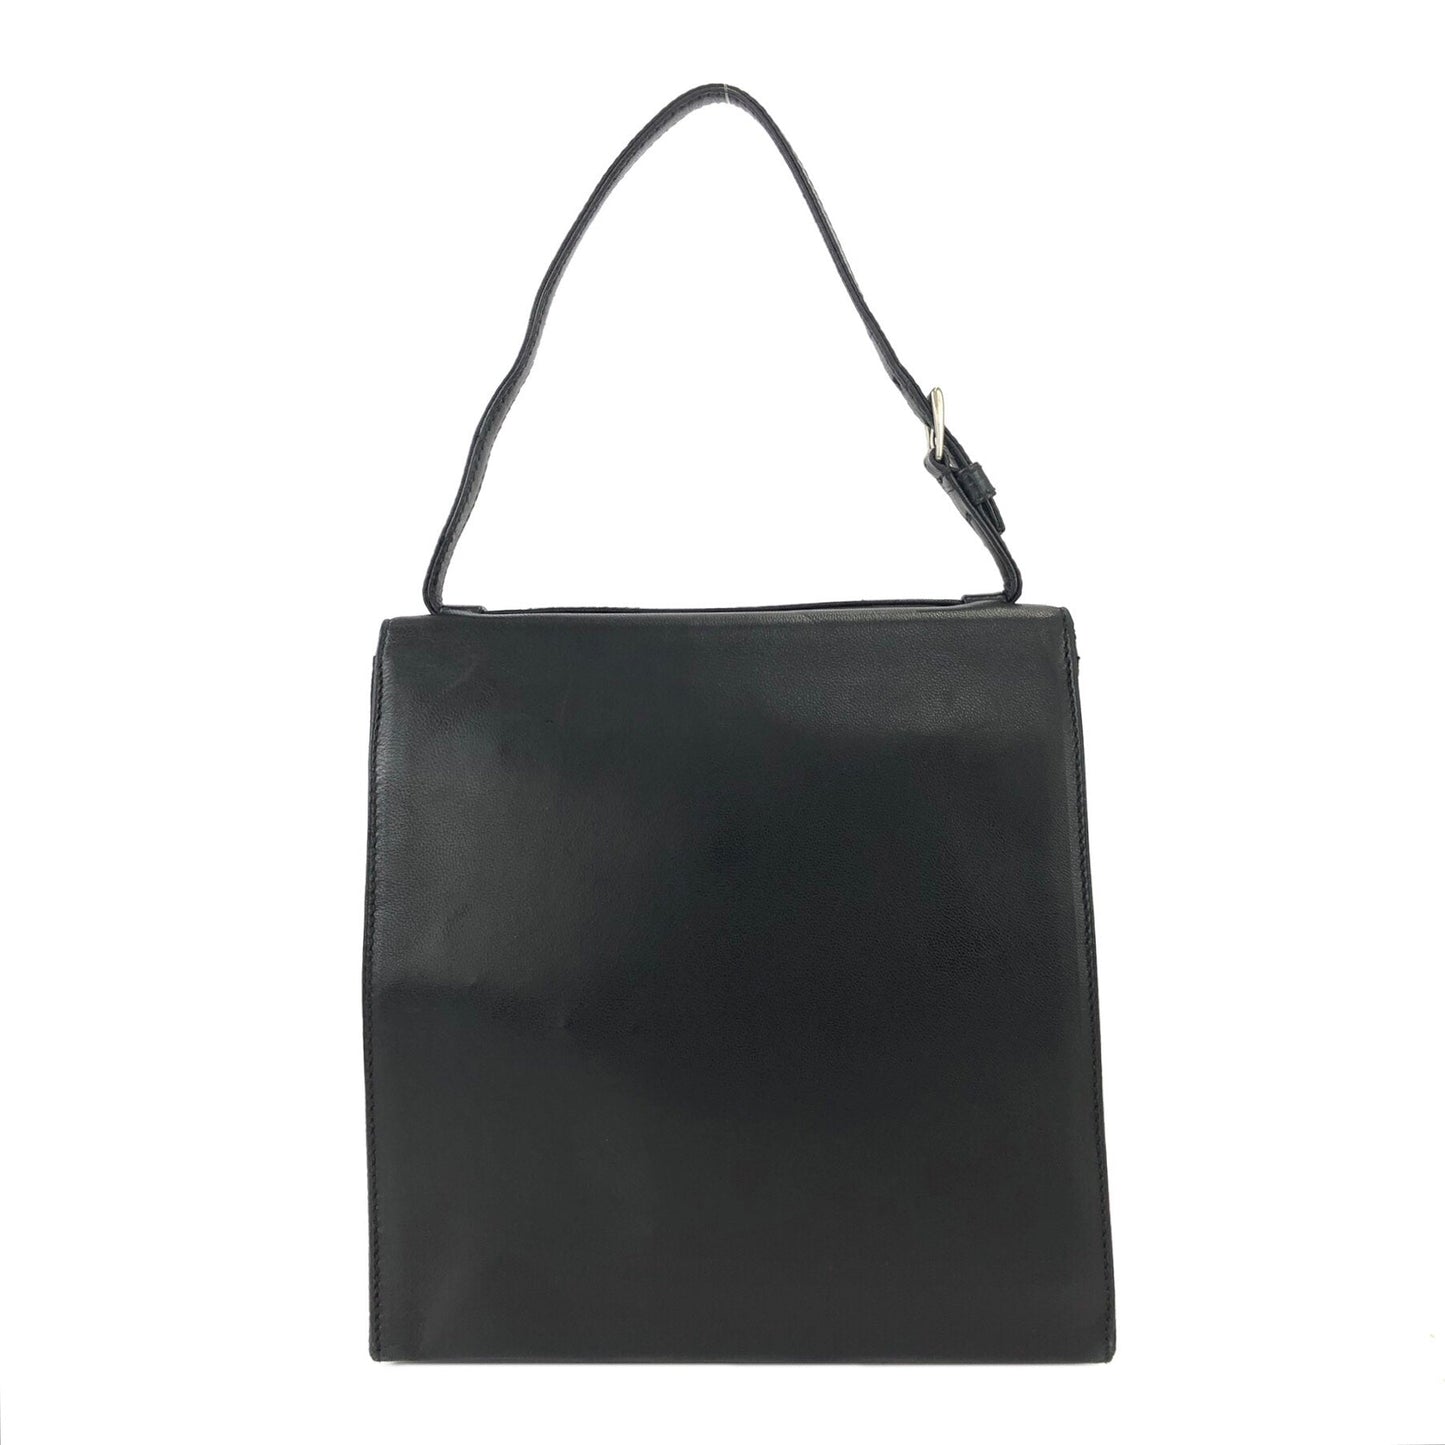 PRADA Nappa Leather Handbag Black wb5dh7